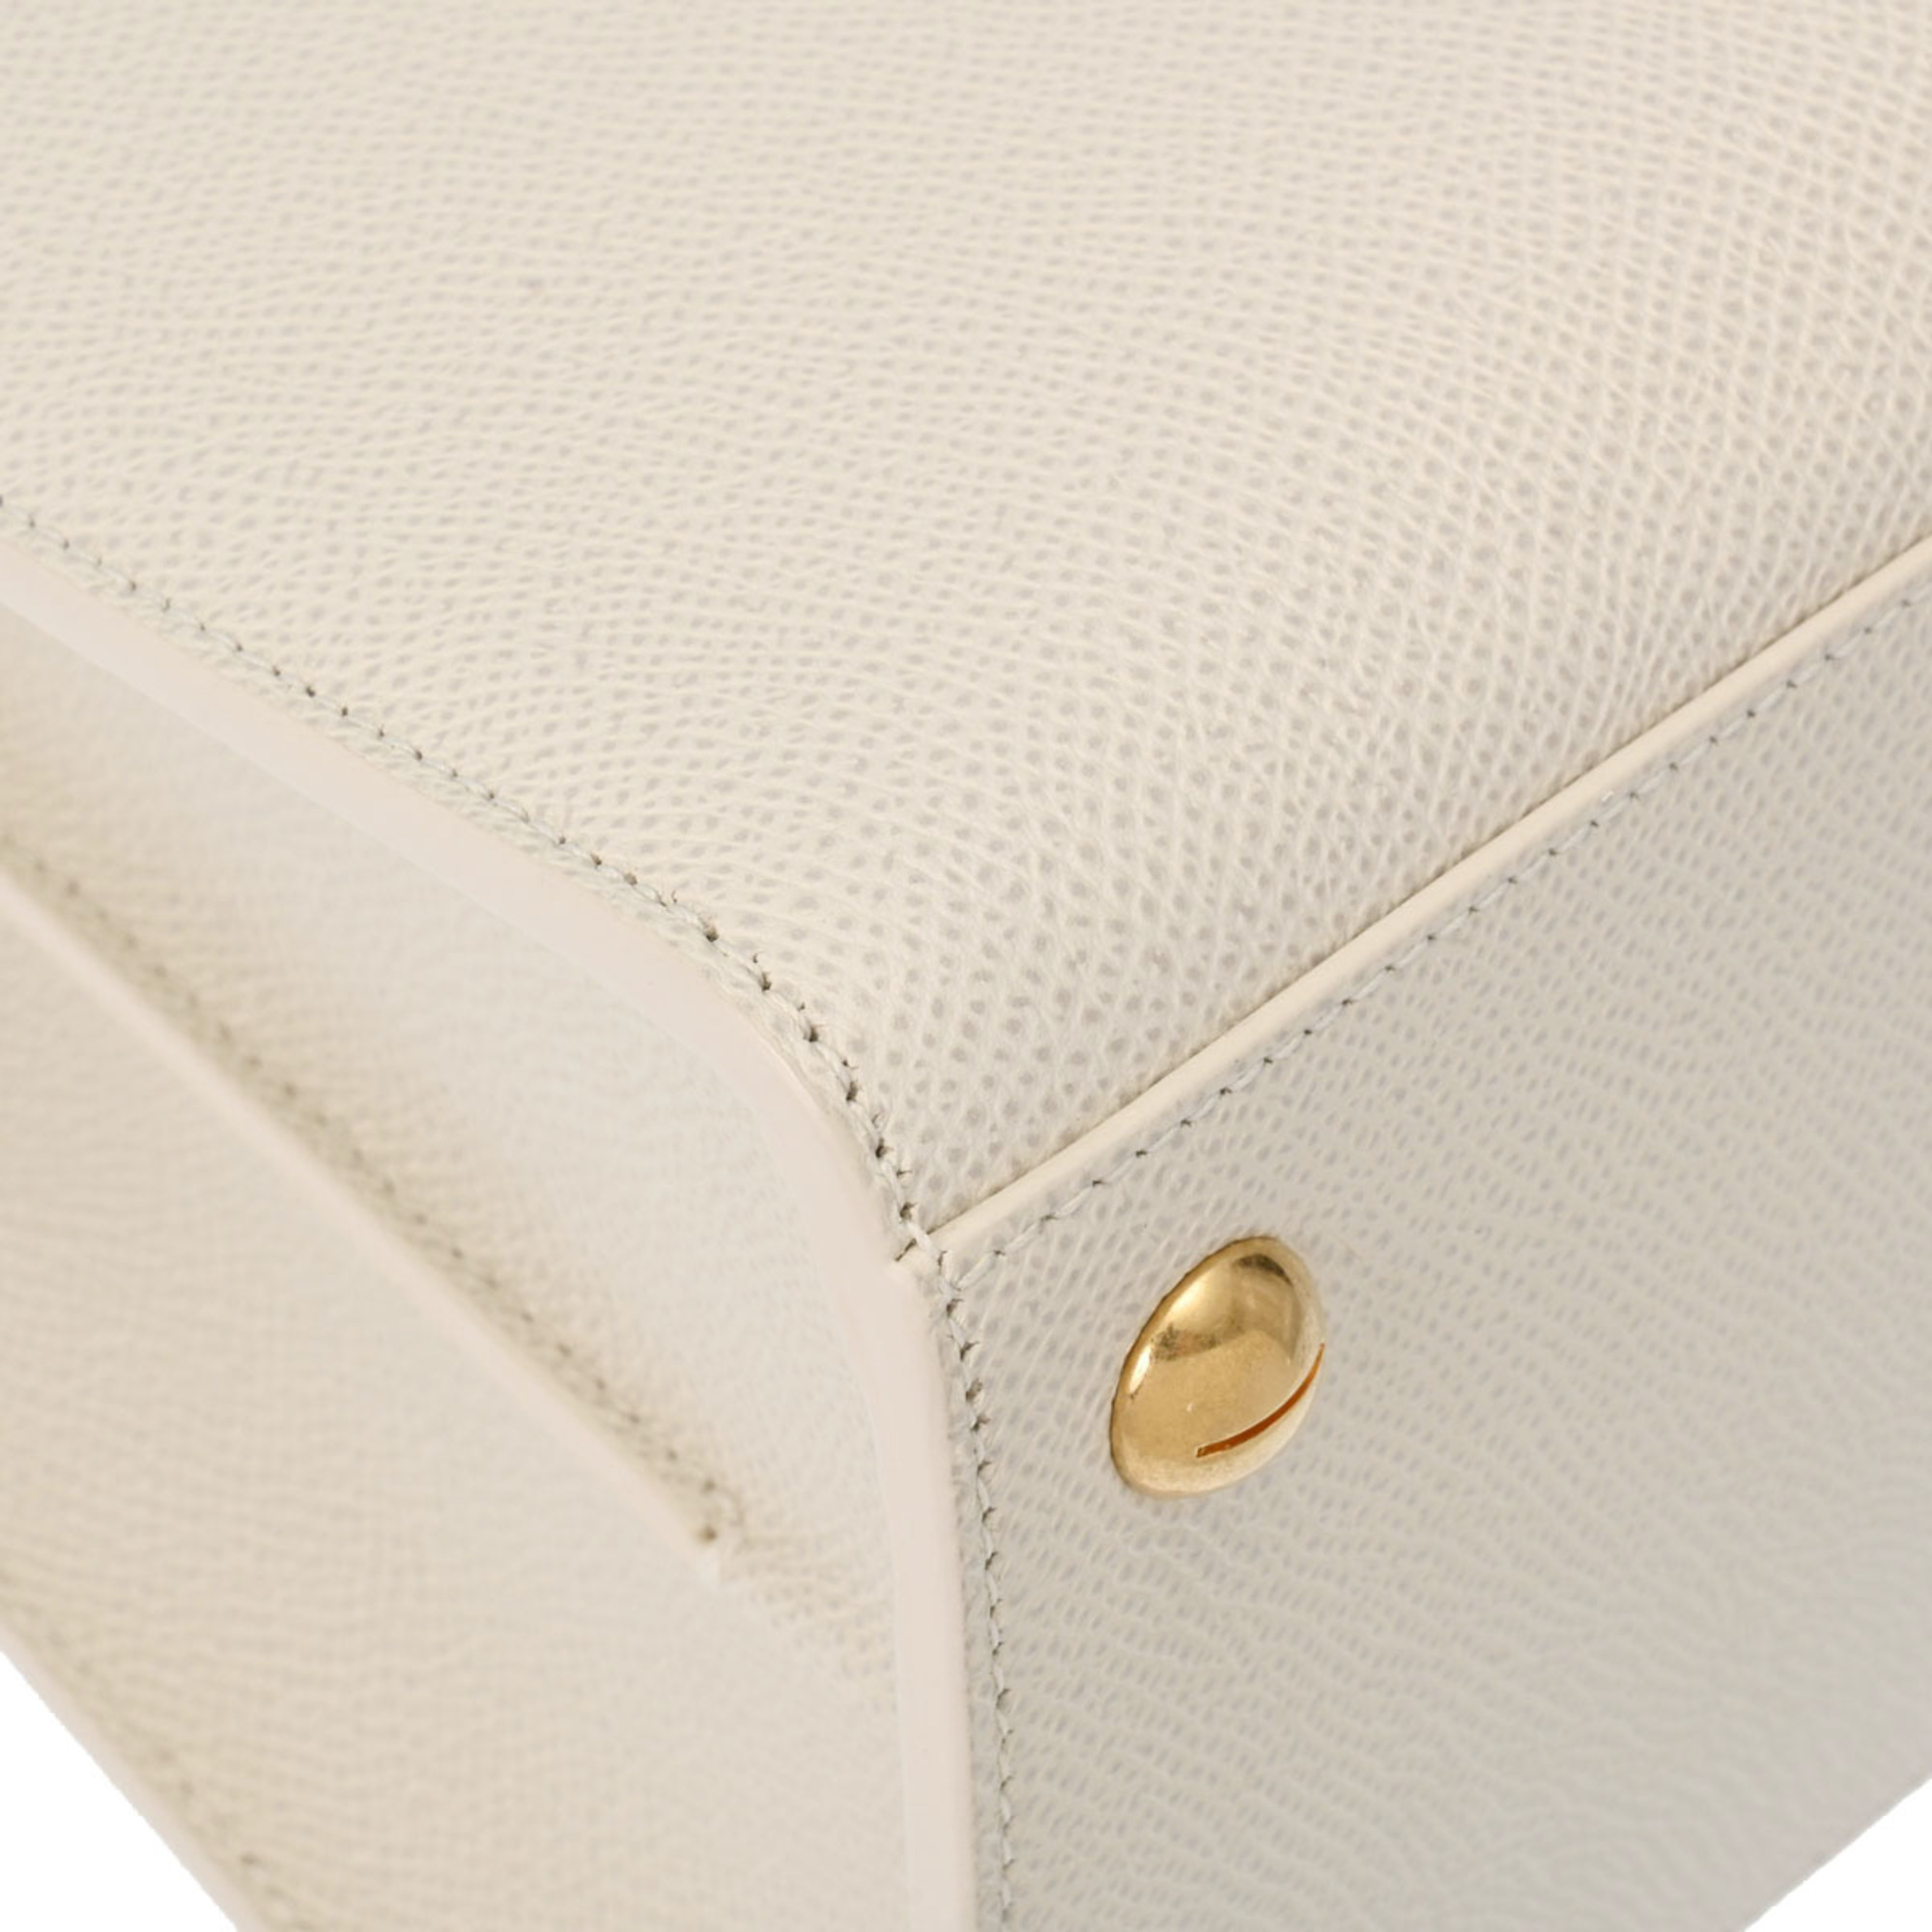 CHRISTIAN DIOR Montaigne White M9321UMBA Women's Leather Handbag